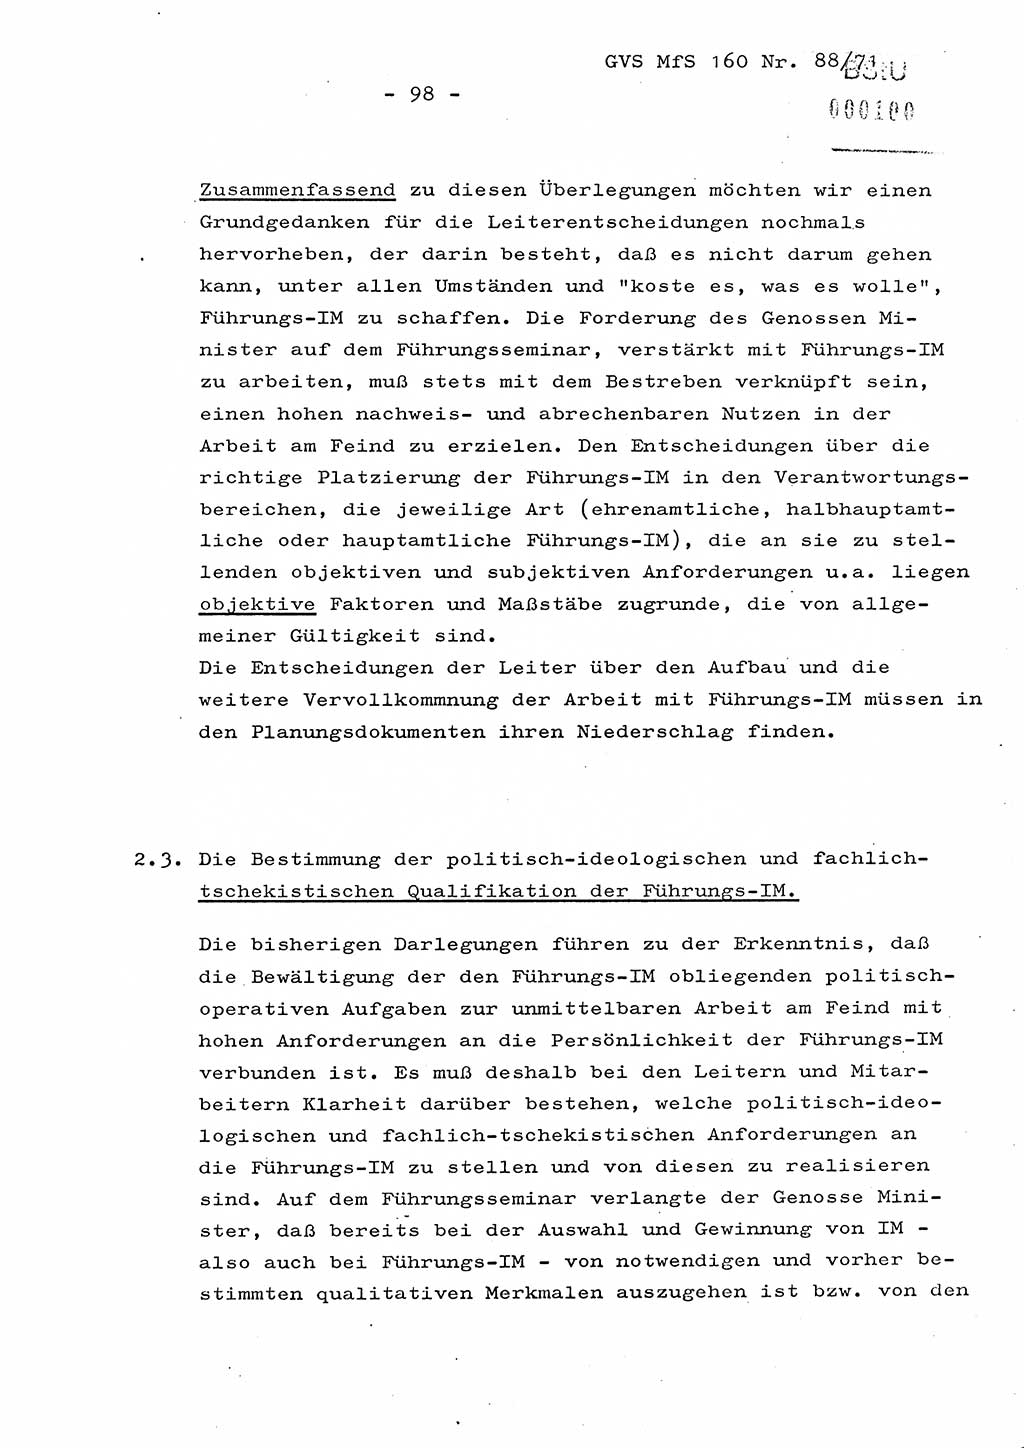 Dissertation Oberstleutnant Josef Schwarz (BV Schwerin), Major Fritz Amm (JHS), Hauptmann Peter Gräßler (JHS), Ministerium für Staatssicherheit (MfS) [Deutsche Demokratische Republik (DDR)], Juristische Hochschule (JHS), Geheime Verschlußsache (GVS) 160-88/71, Potsdam 1972, Seite 98 (Diss. MfS DDR JHS GVS 160-88/71 1972, S. 98)